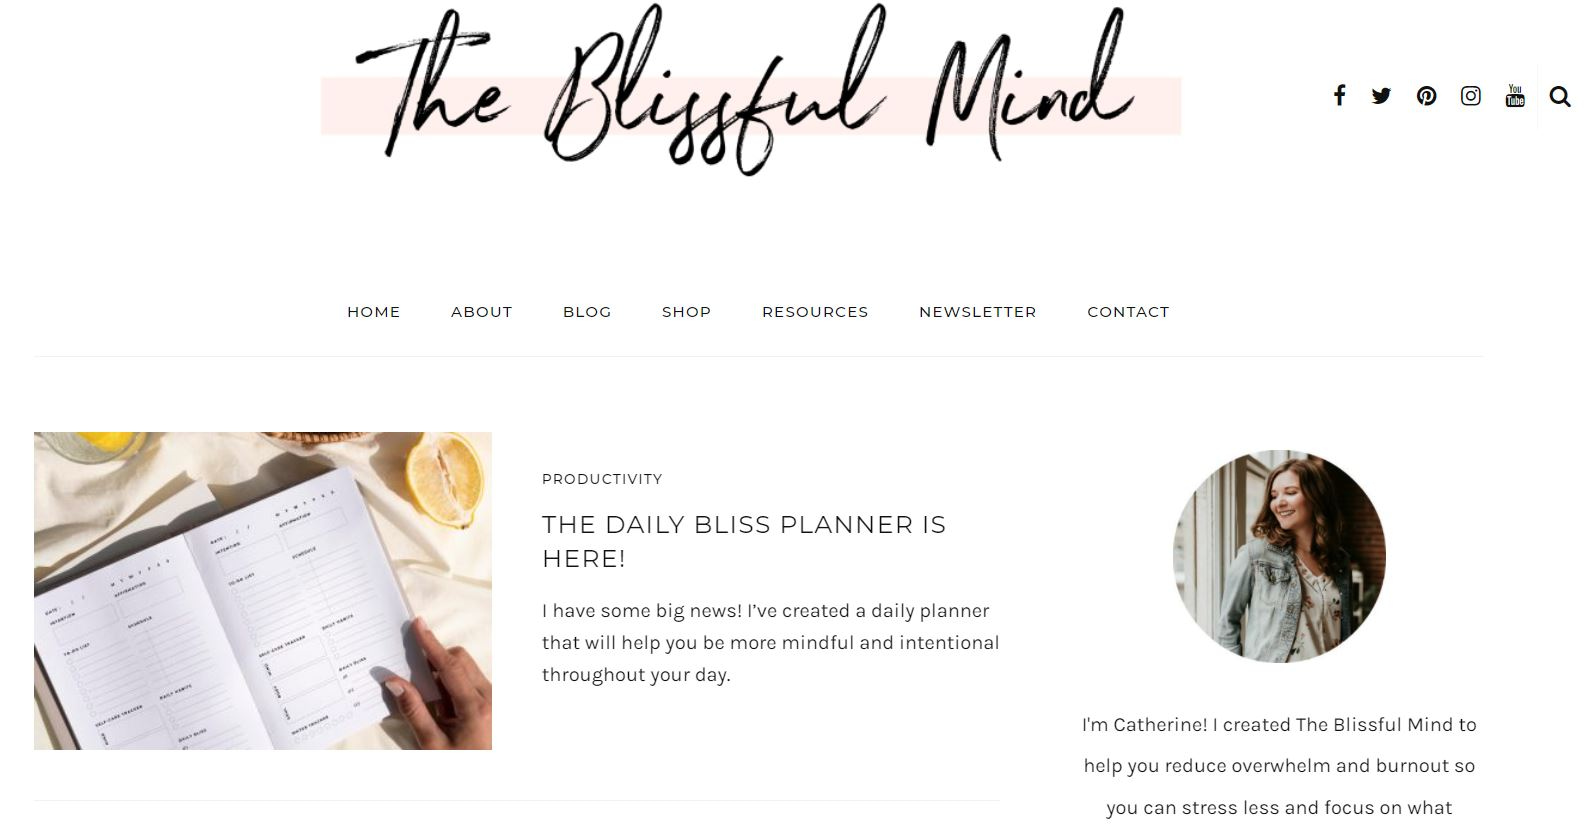 關於自我保健的 Blissful Mind 博客，這是 2022 年最賺錢的博客領域之一。